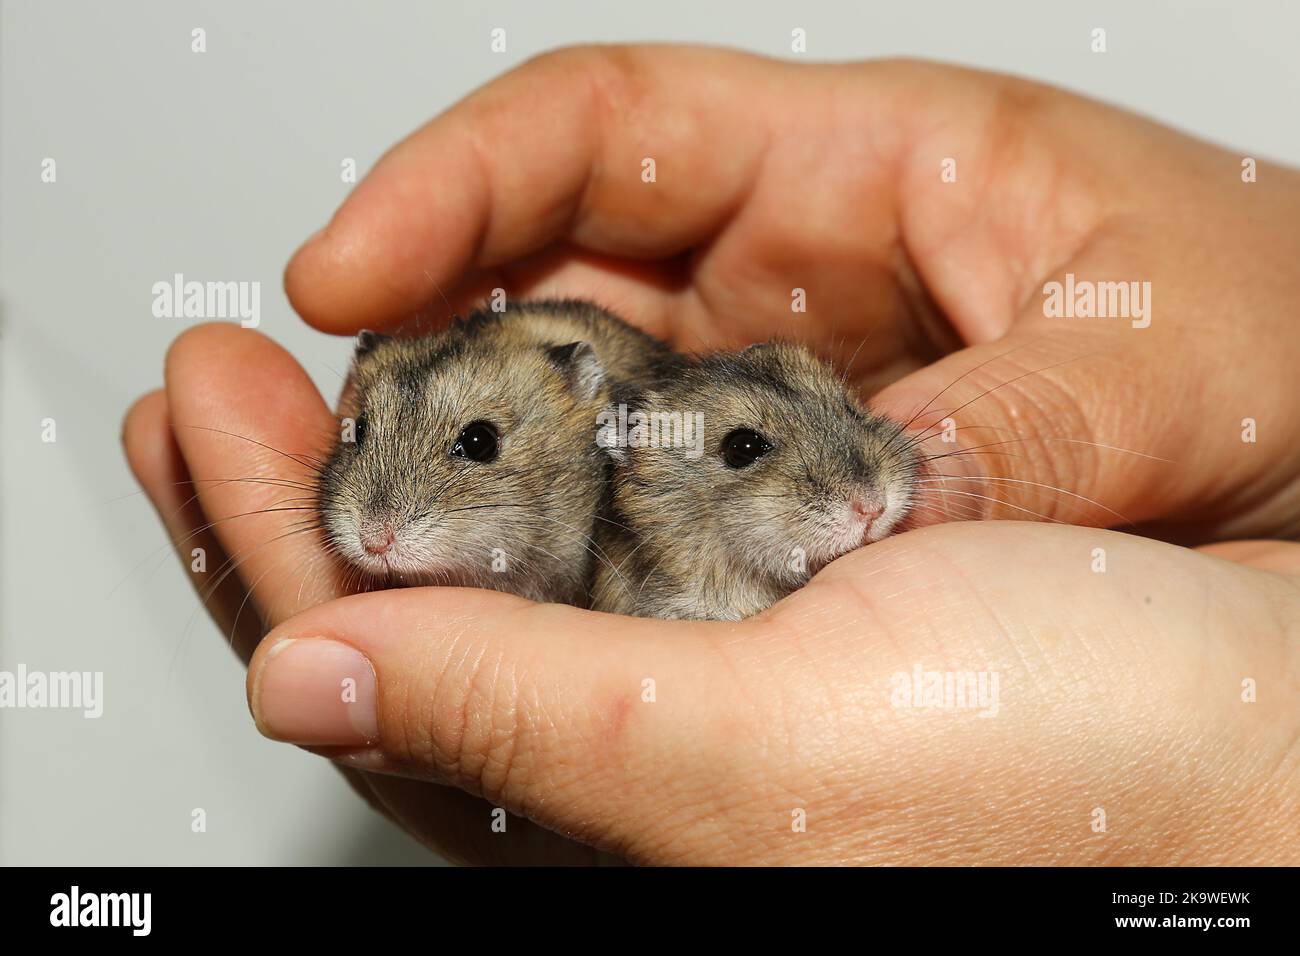 Graue Hamster sitzen in den Händen eines Mannes. Kleine, gräuliche Hamster in den Palmen des Besitzers. Charmante Gesichter nagen. Die Pflege von Haustieren. Nagetiere zähmen. Stockfoto